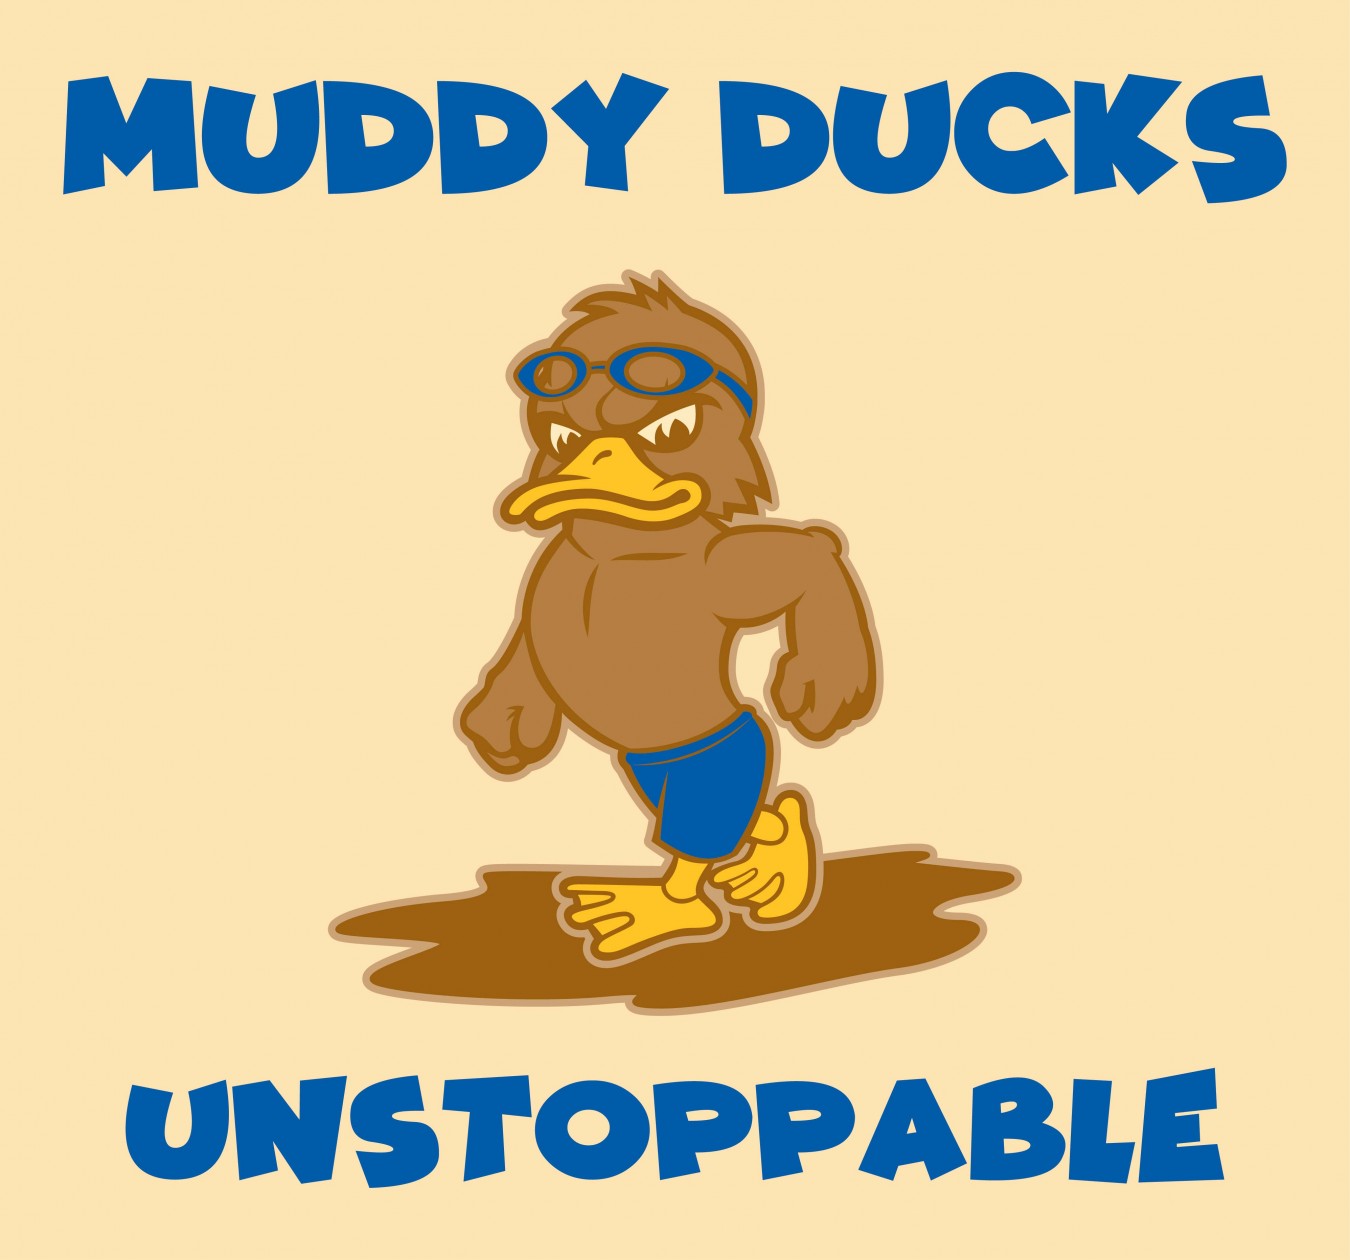 The Muddy Ducks